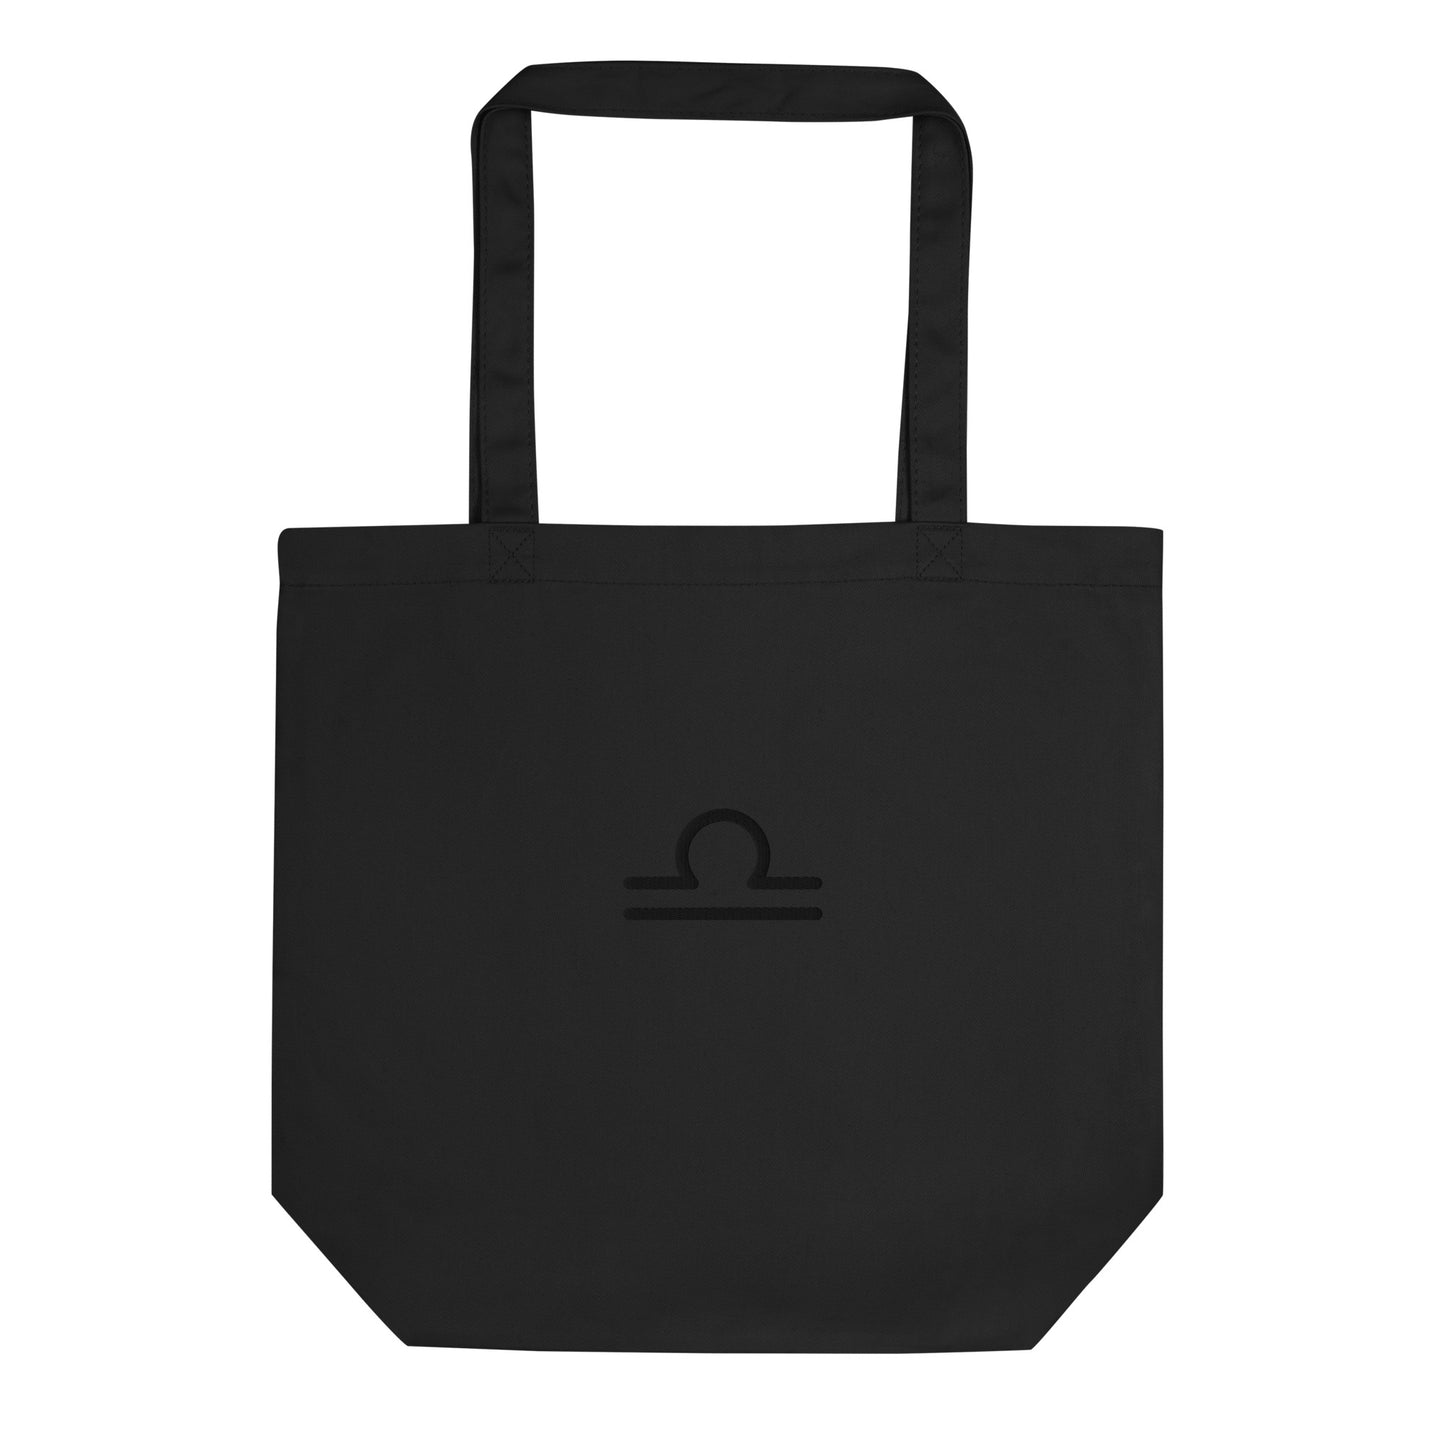 Libra - Small Open Tote Bag - Black Thread